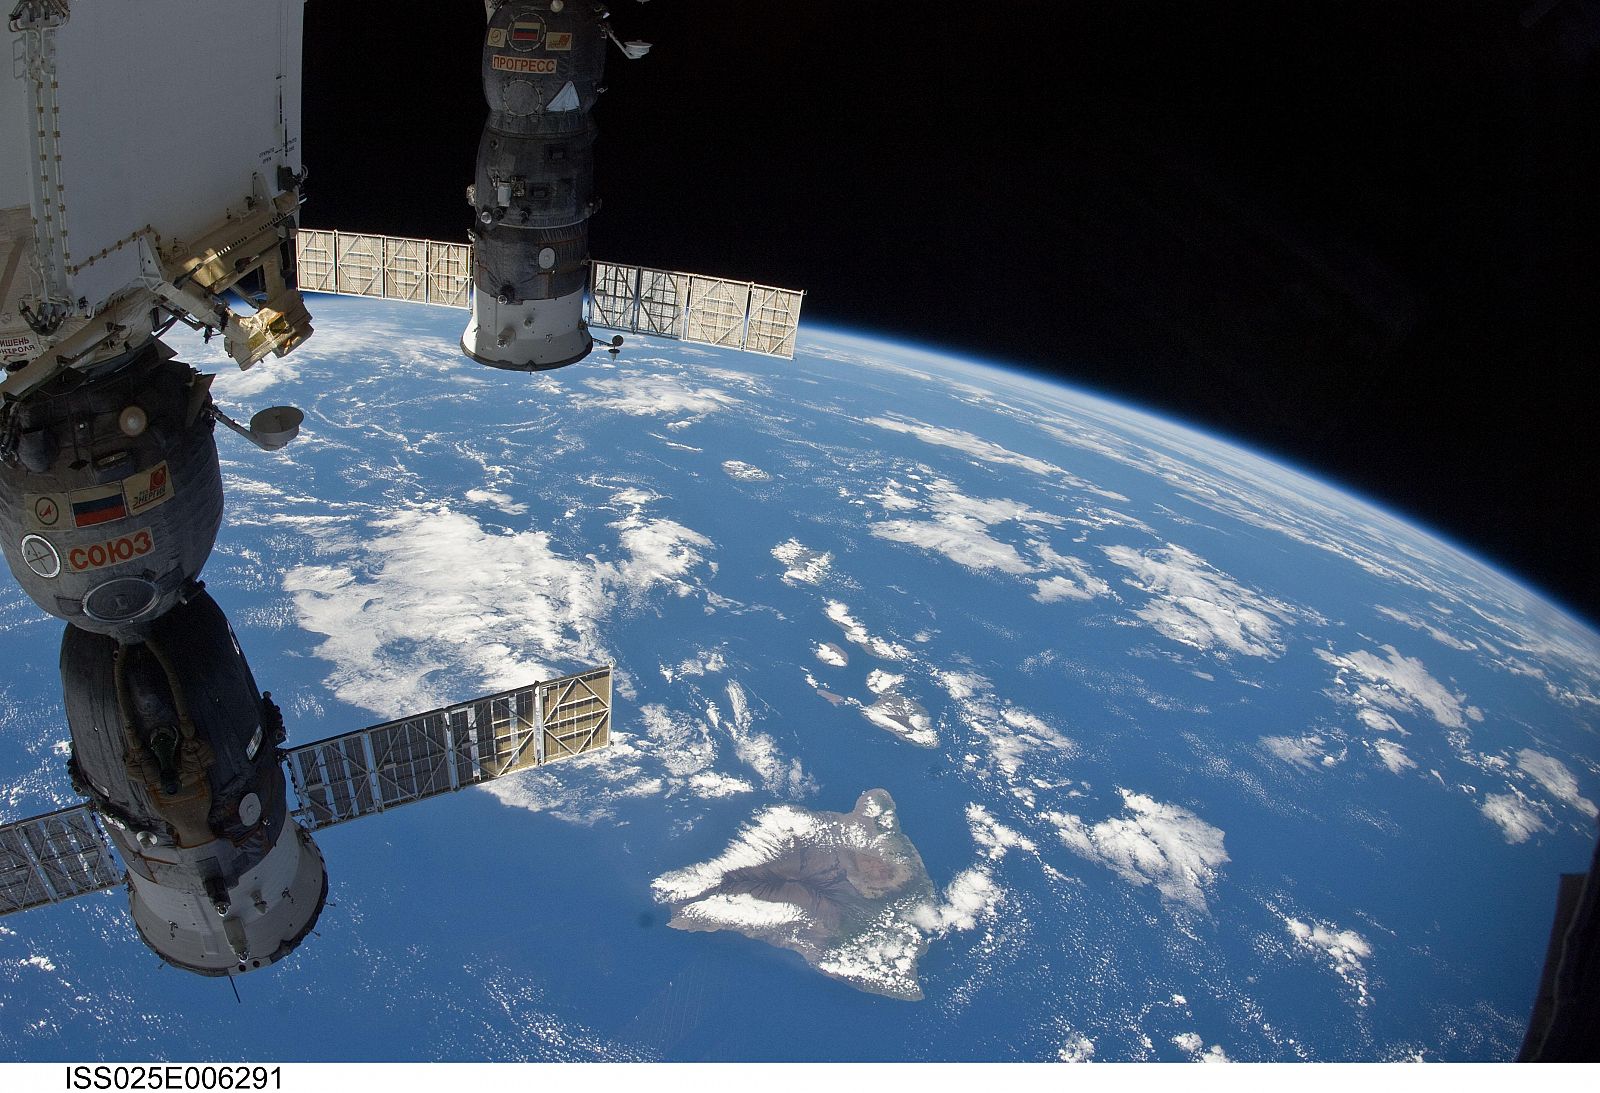 Habitualmente la altura promedio de la ISS oscila entre los 360 y los 330 kilómetros.